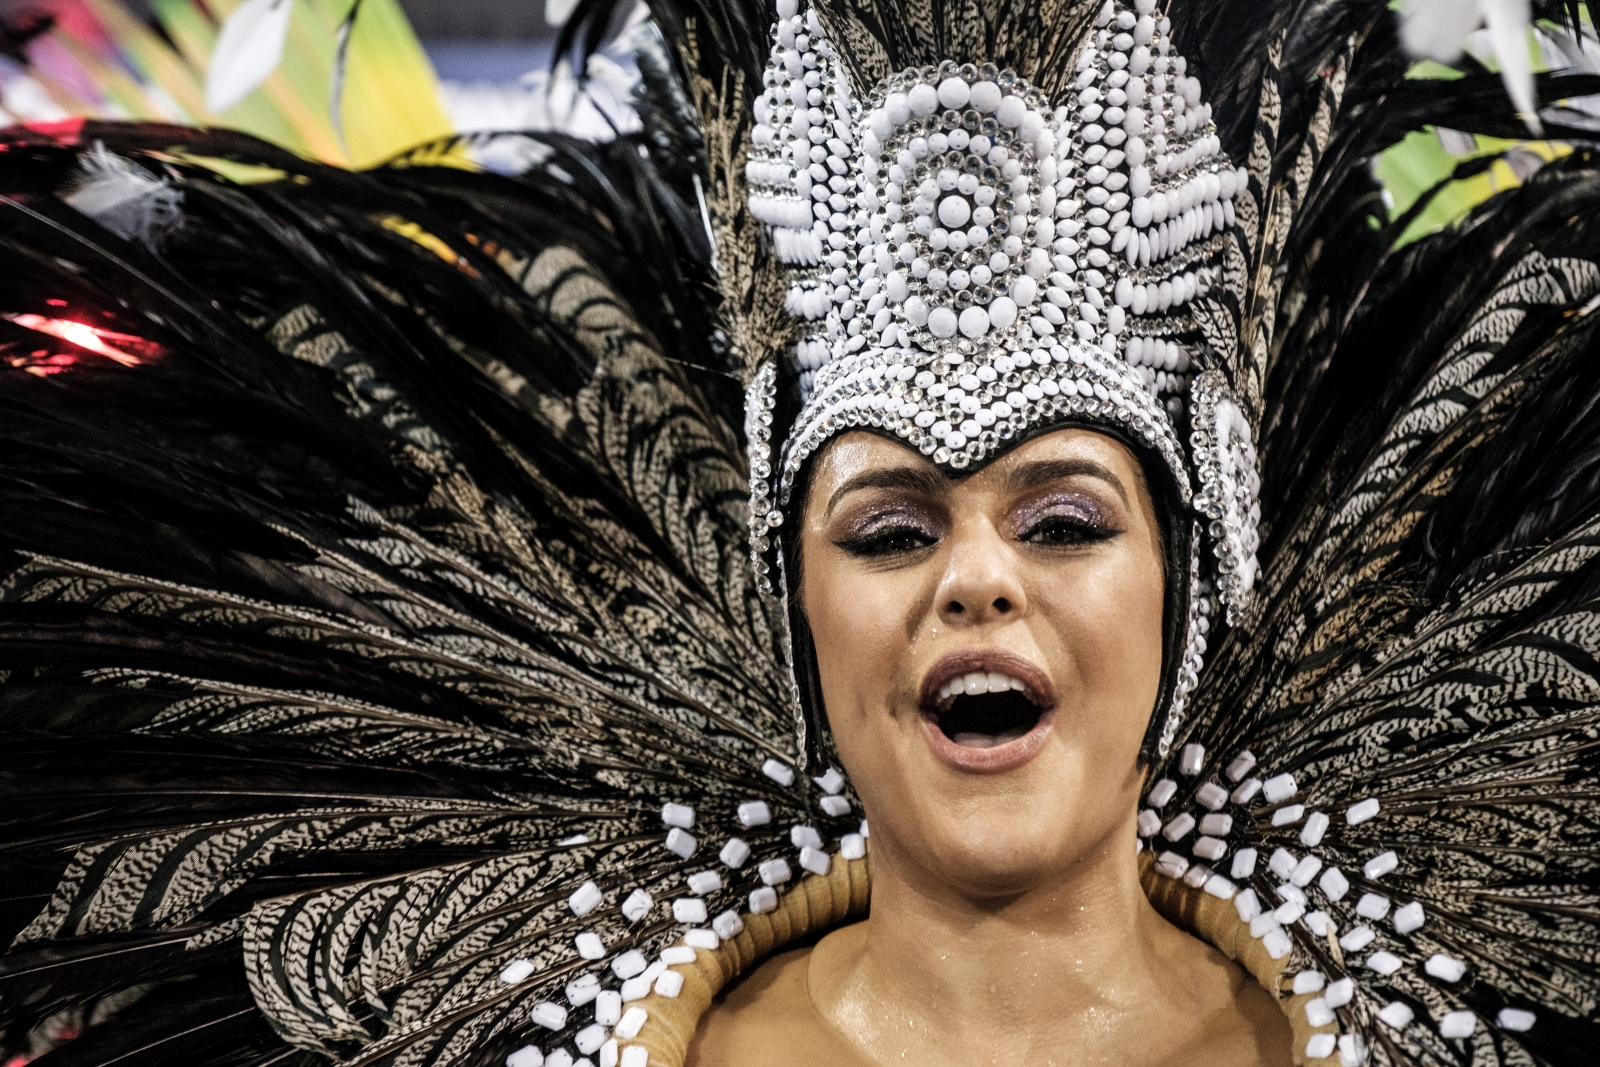 Rio de Janeiro Carnival 2017 Grande Rio